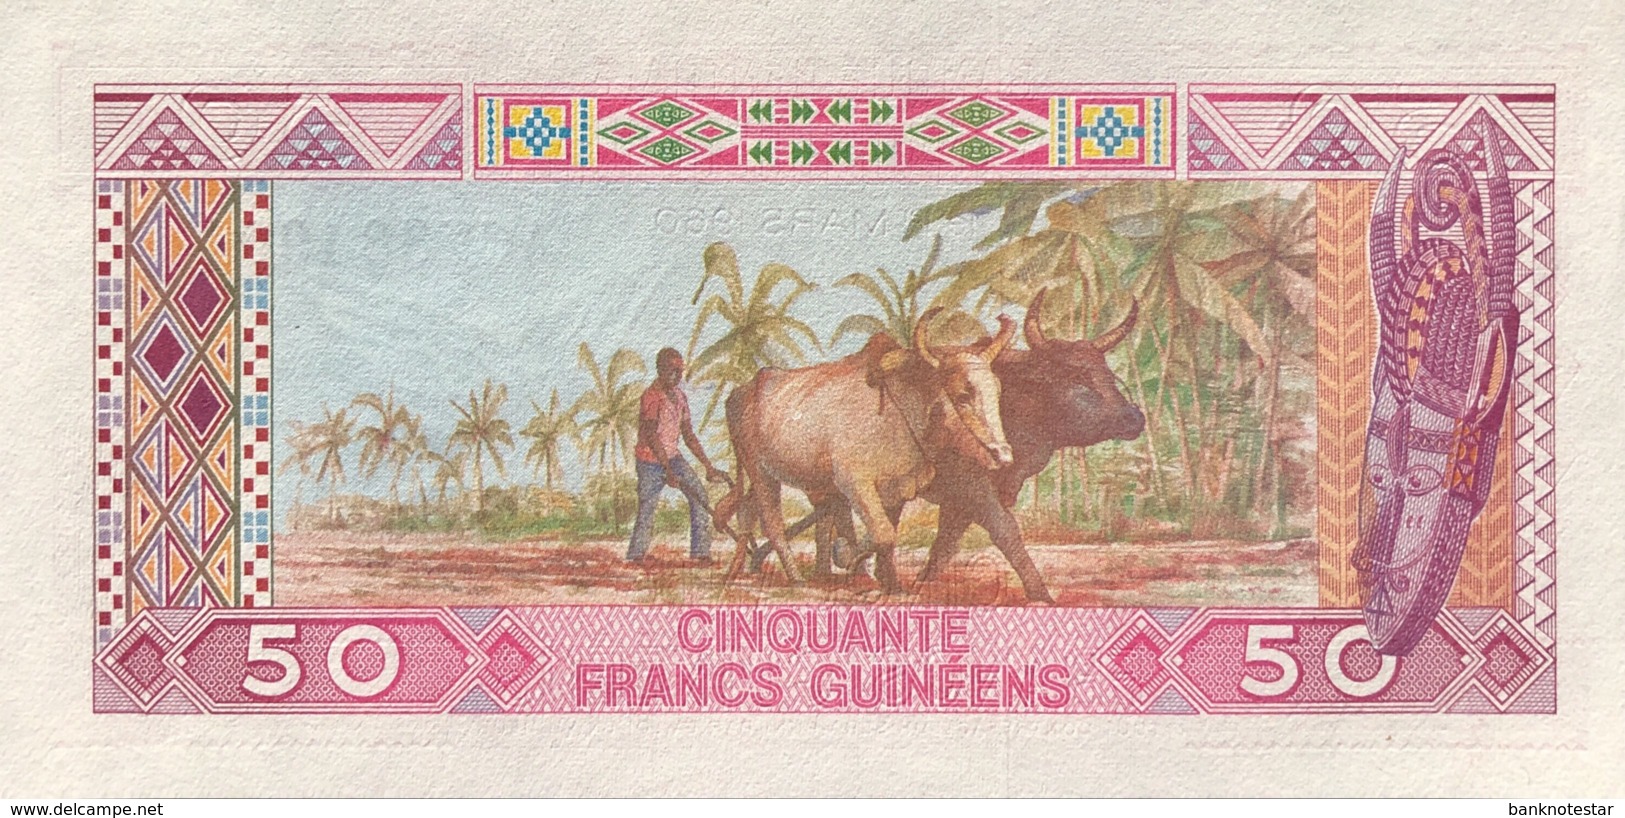 Guinea 50 Francs, P-29 (1985) - UNC - Guinea